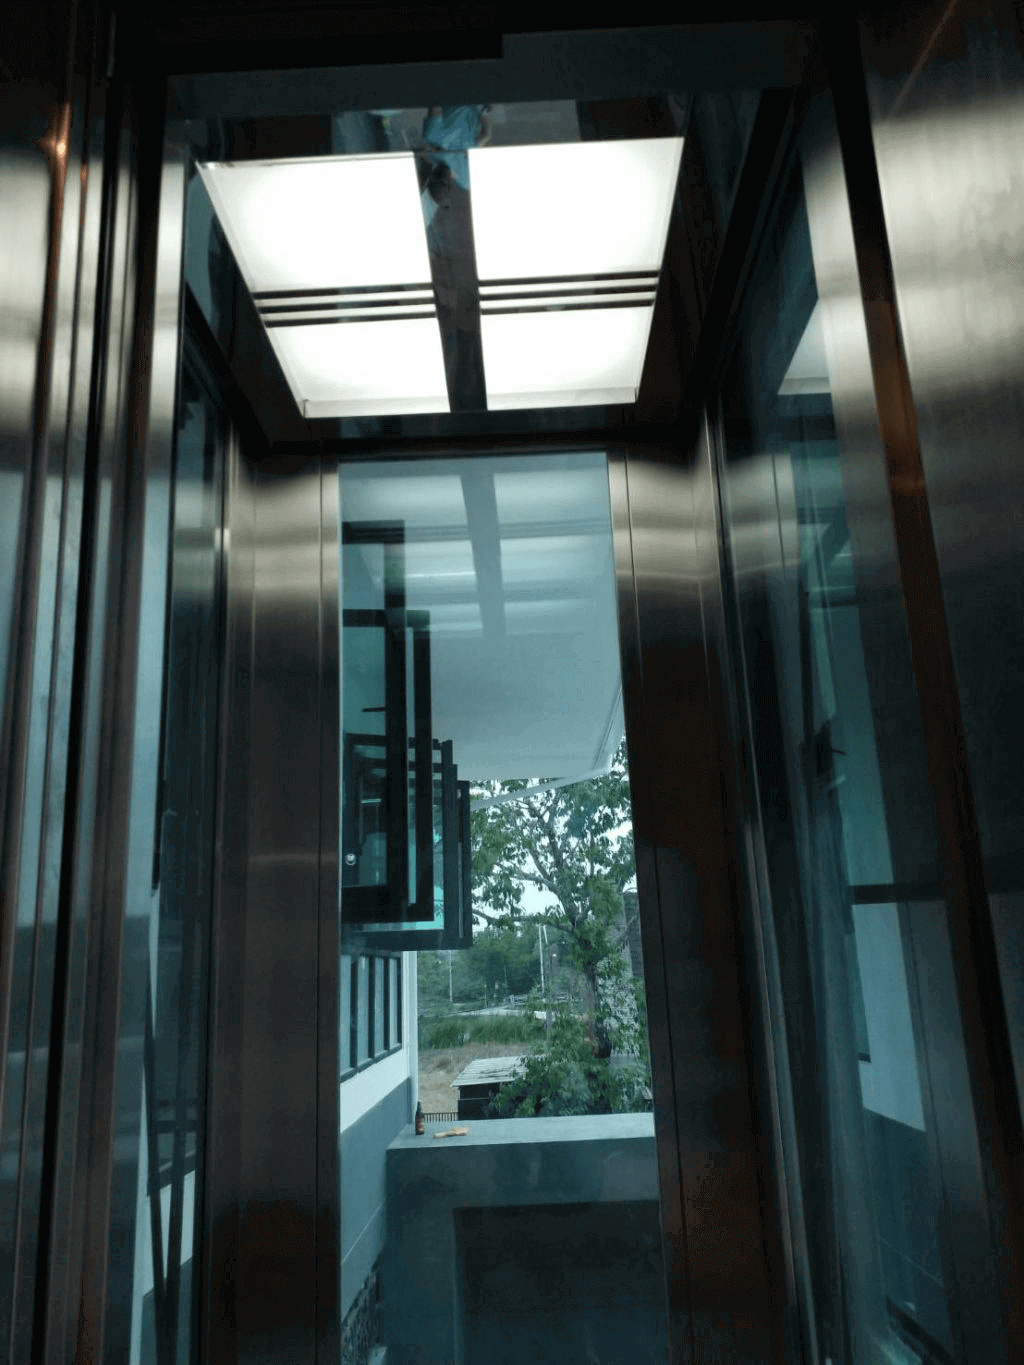 ลิฟท์บ้าน-ลิฟท์โดบสารขนาดเล็ก